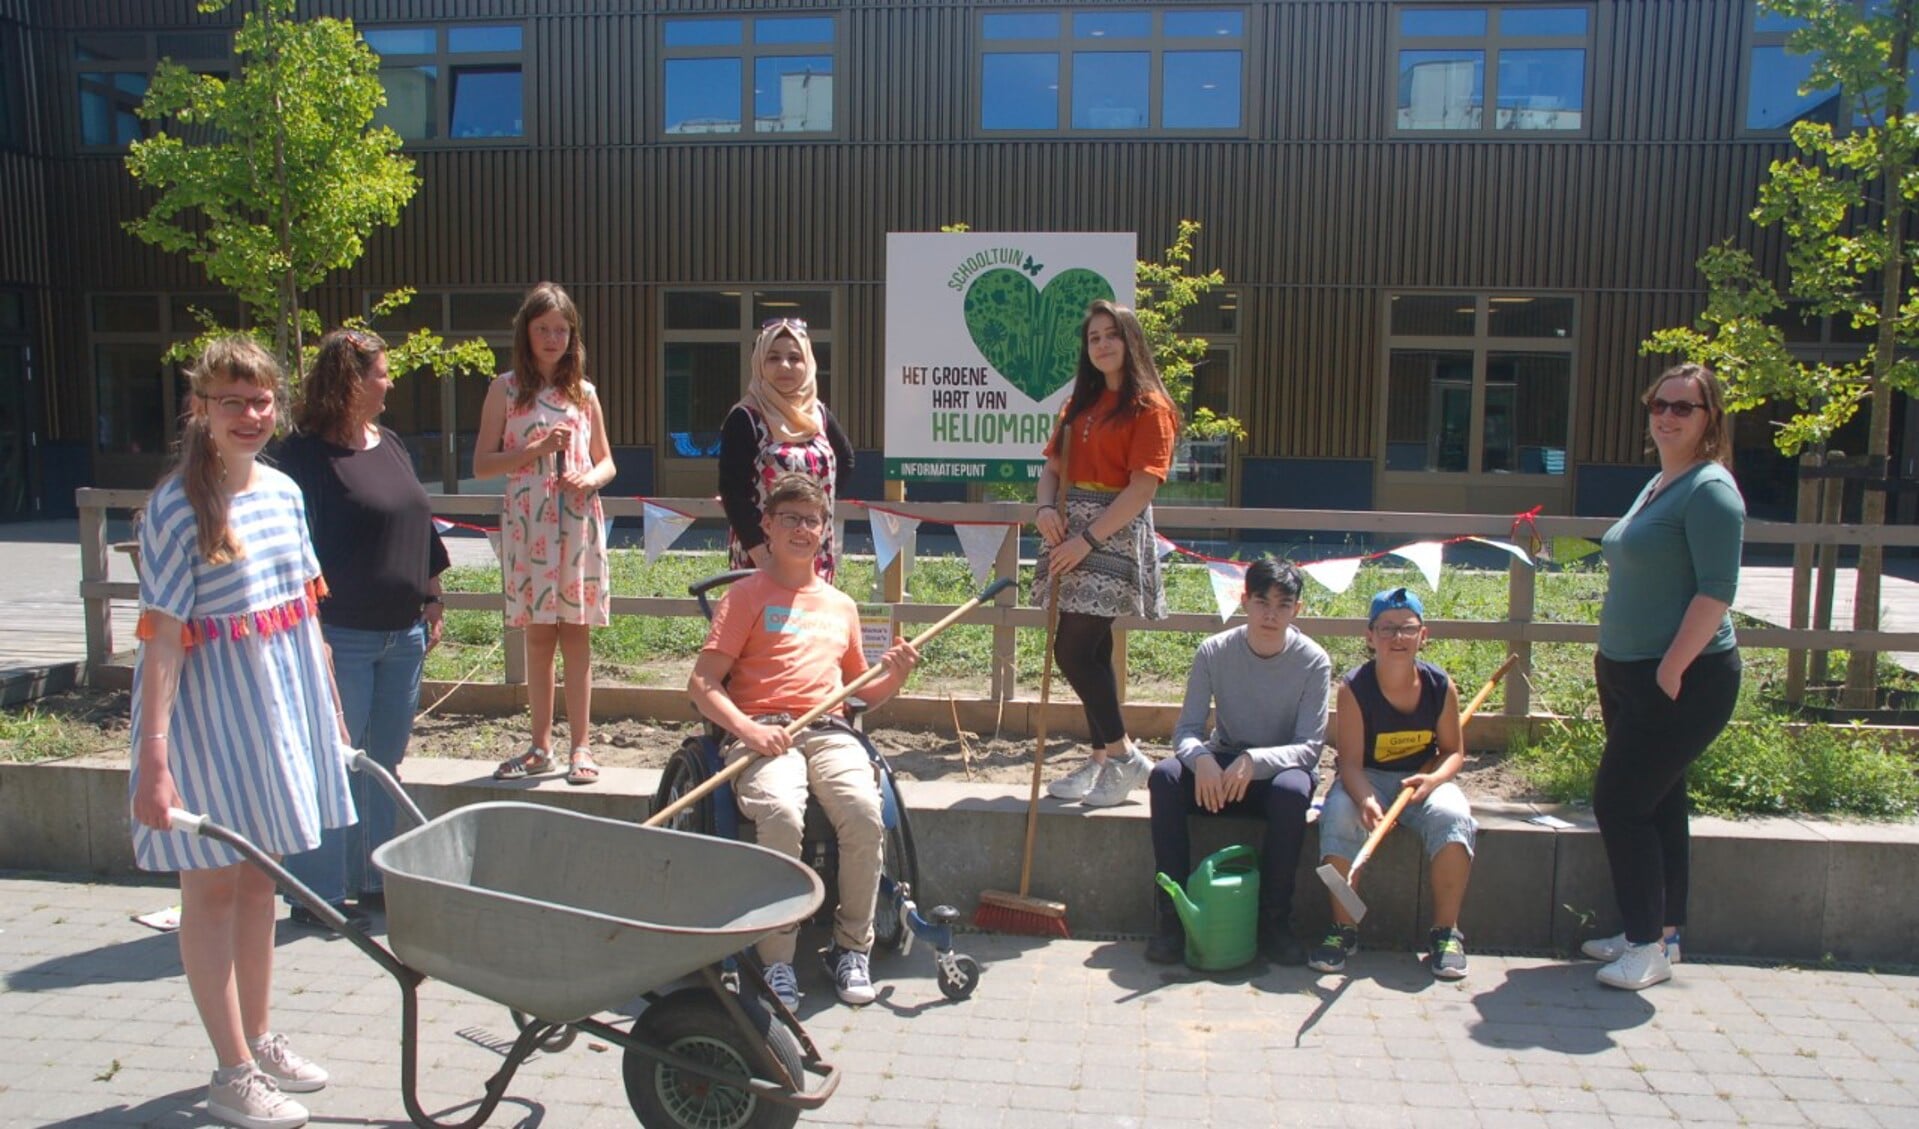 Coördinator Cindy Henneman van schooltuinen 'Het Groene Hart' kwam met leerlingen een bord onthullen